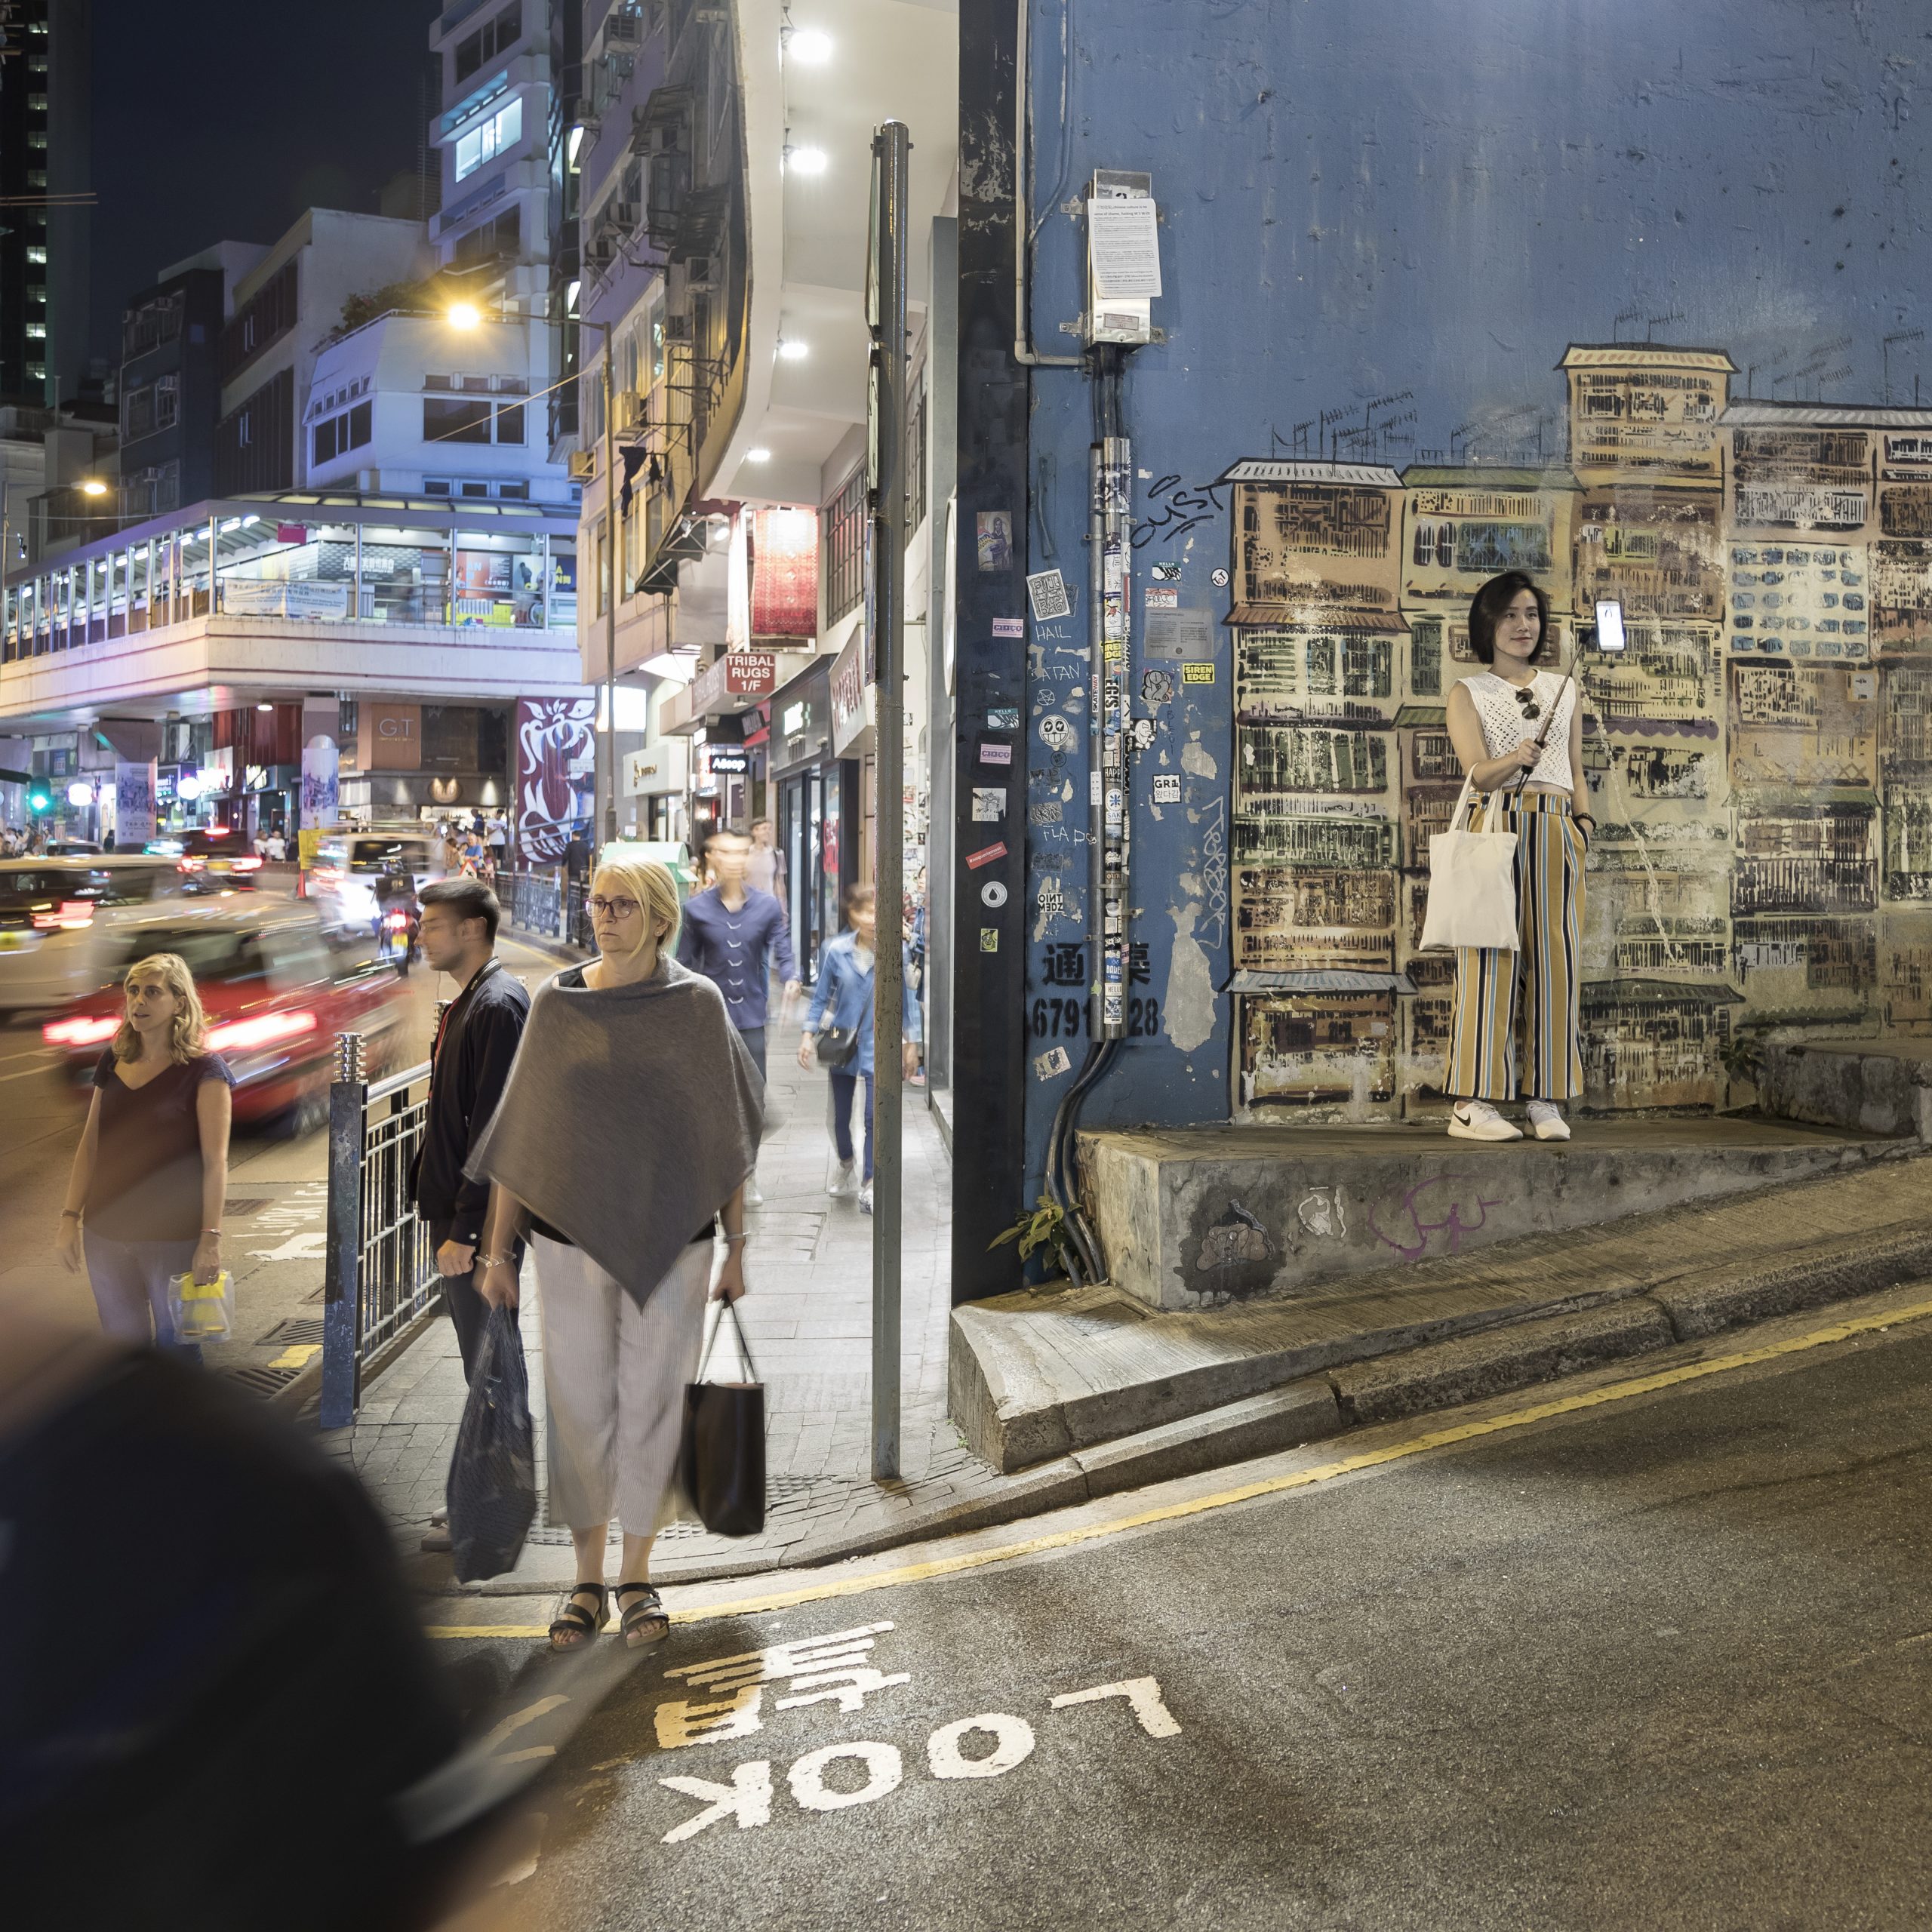 Young woman making a selfie in Hong Kong - street photography - photo by photographer Tuomas Harjumaaskola, China